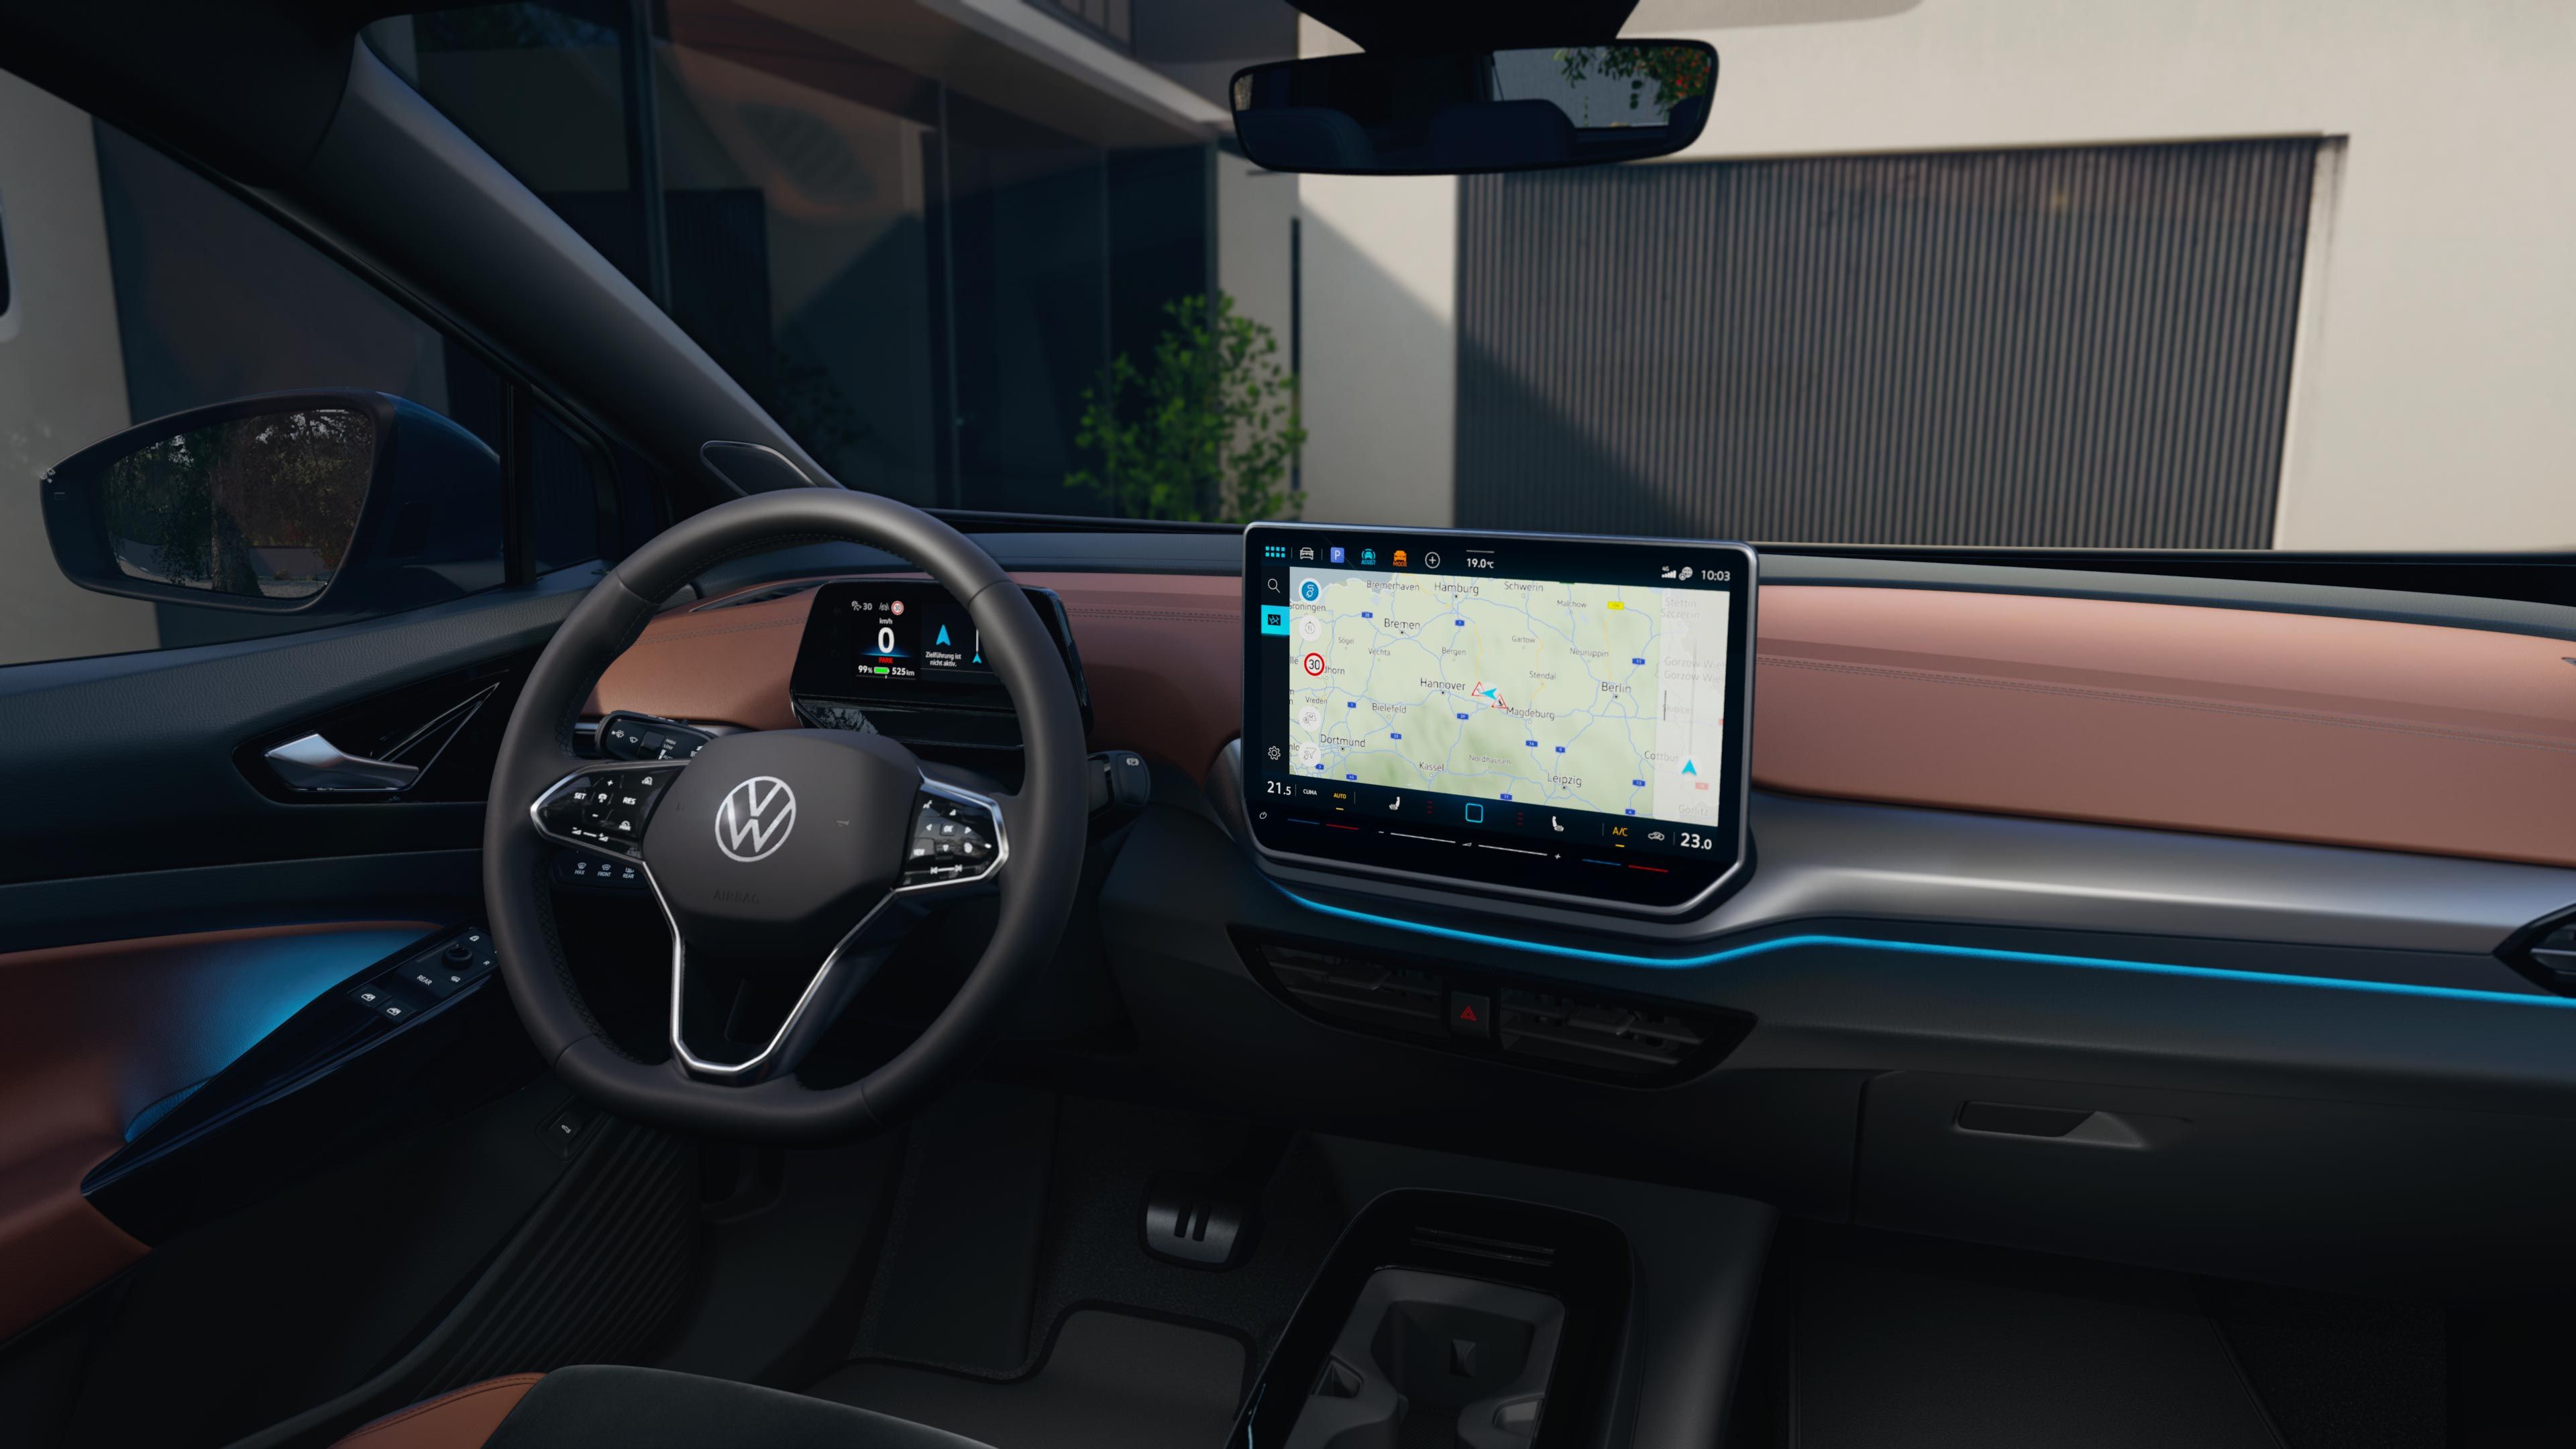 Detailaufnahme des Infotainment-Displays im VW ID.4. Das Display zeigt eine Navigationskarte.